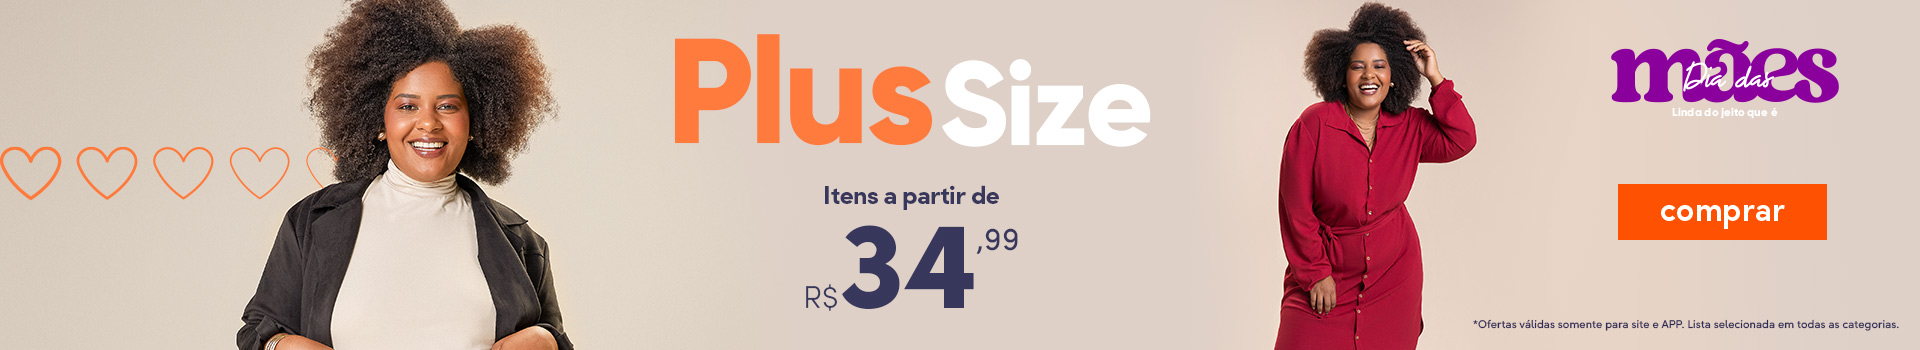 Plus Size Especial Mães - a partir de R$ 34,99